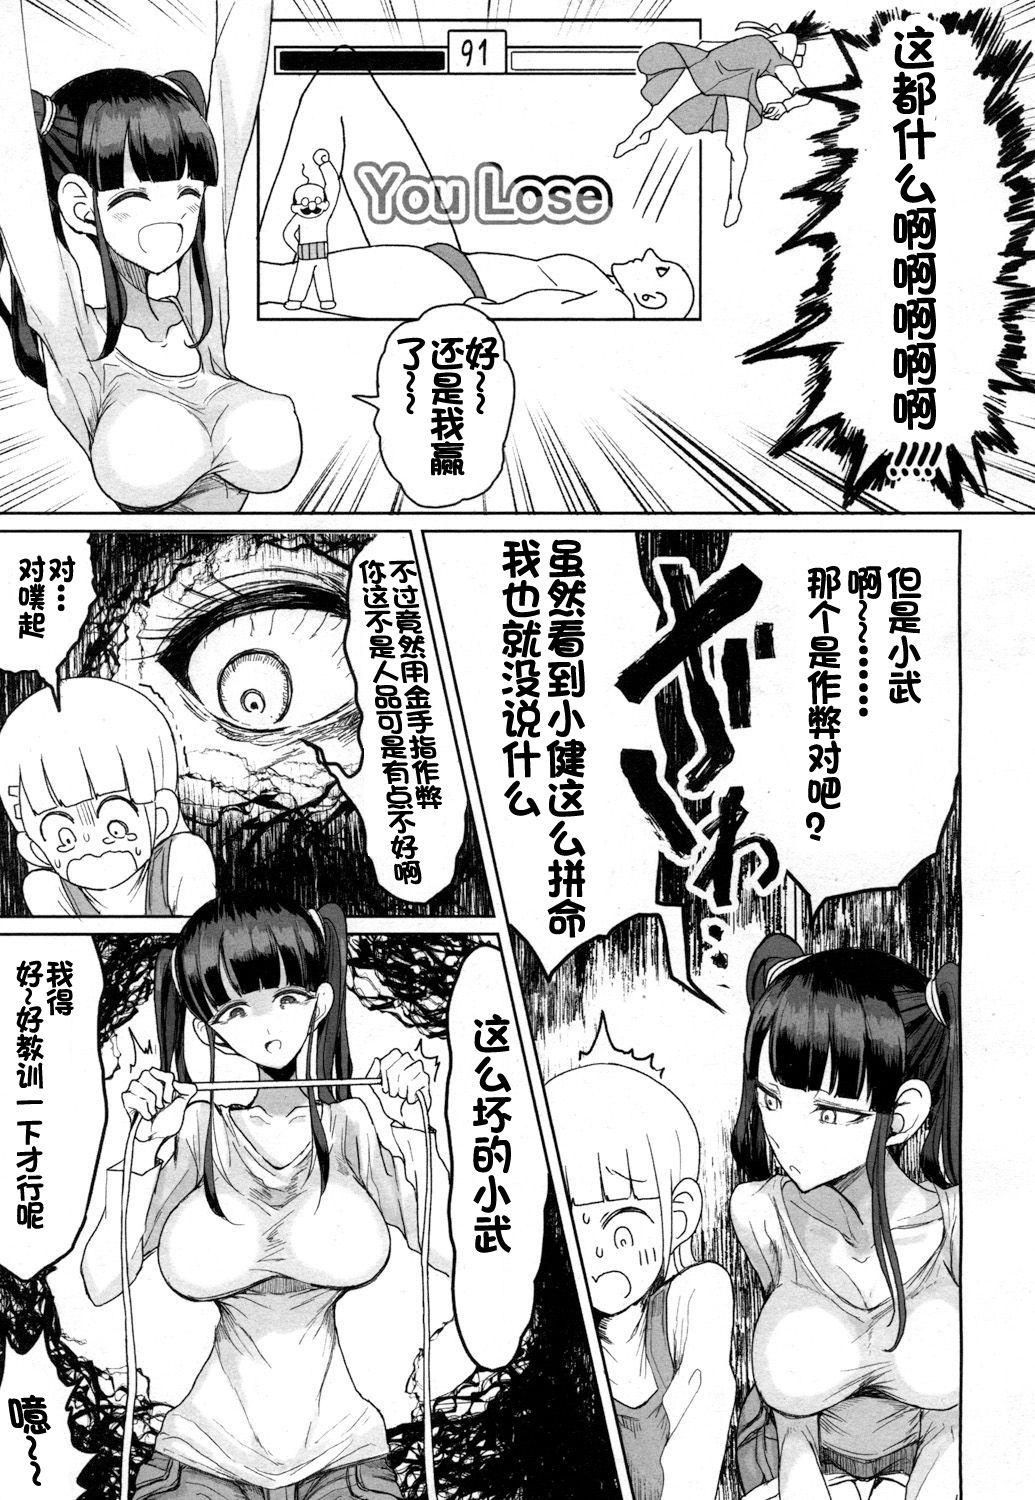 Jap Sekai Saikyou no Onna VS Chounai Saikyou no Shounen Load - Page 6